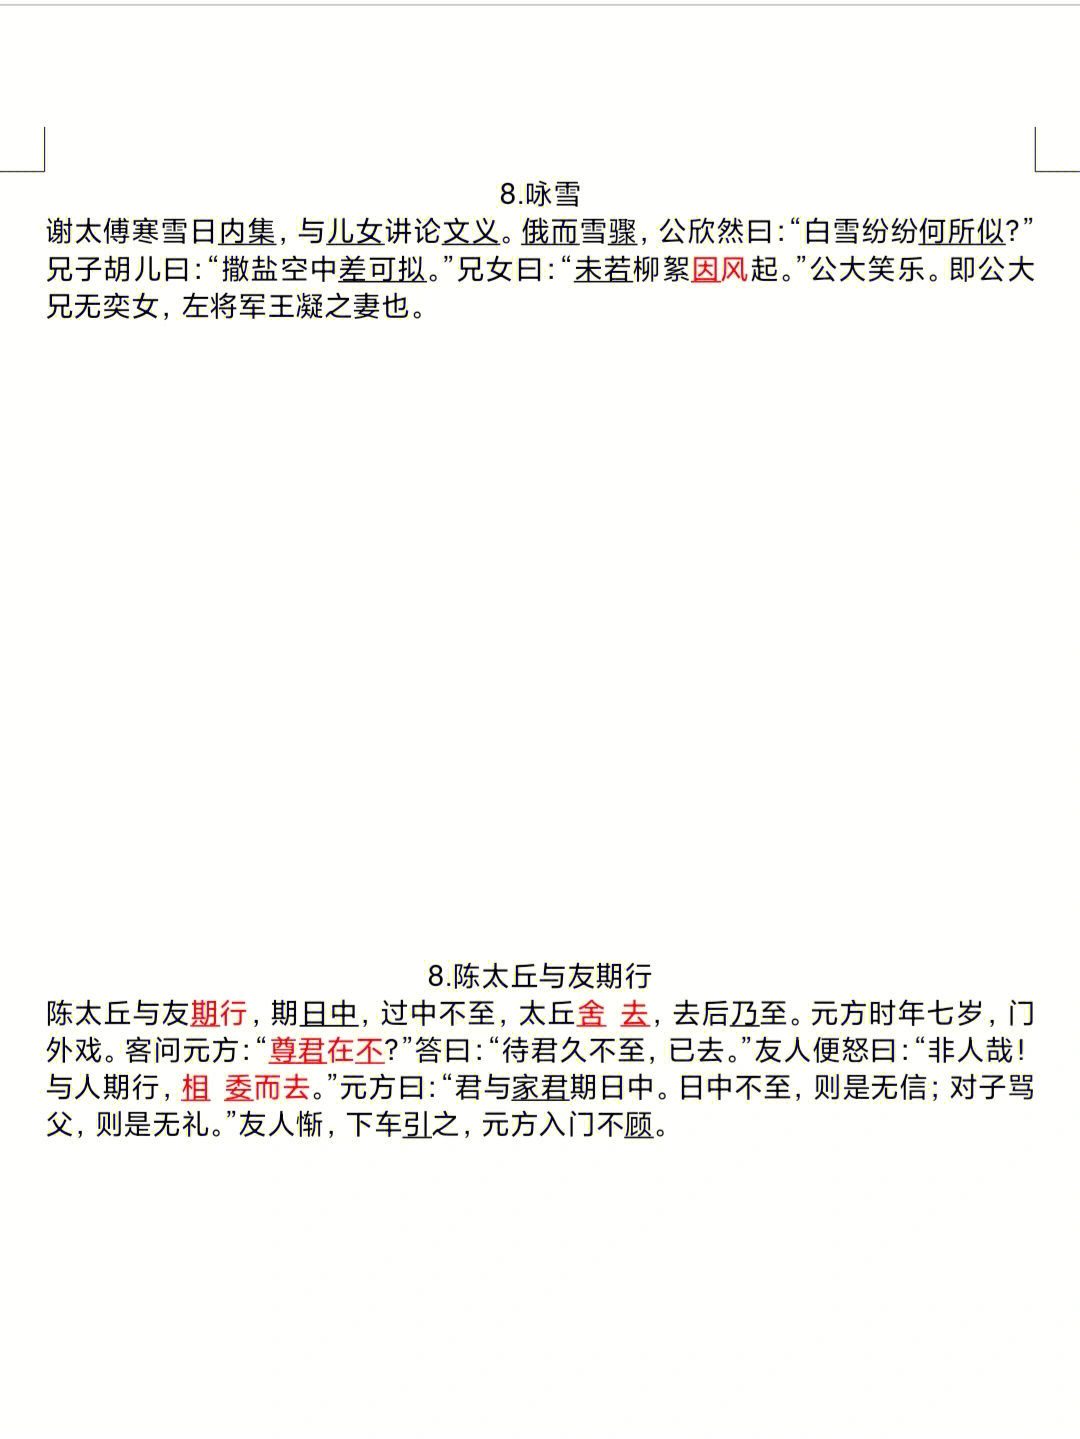 七上语文文言文注释整理,标横线的黑色字体直接翻译;红色字体的是词语